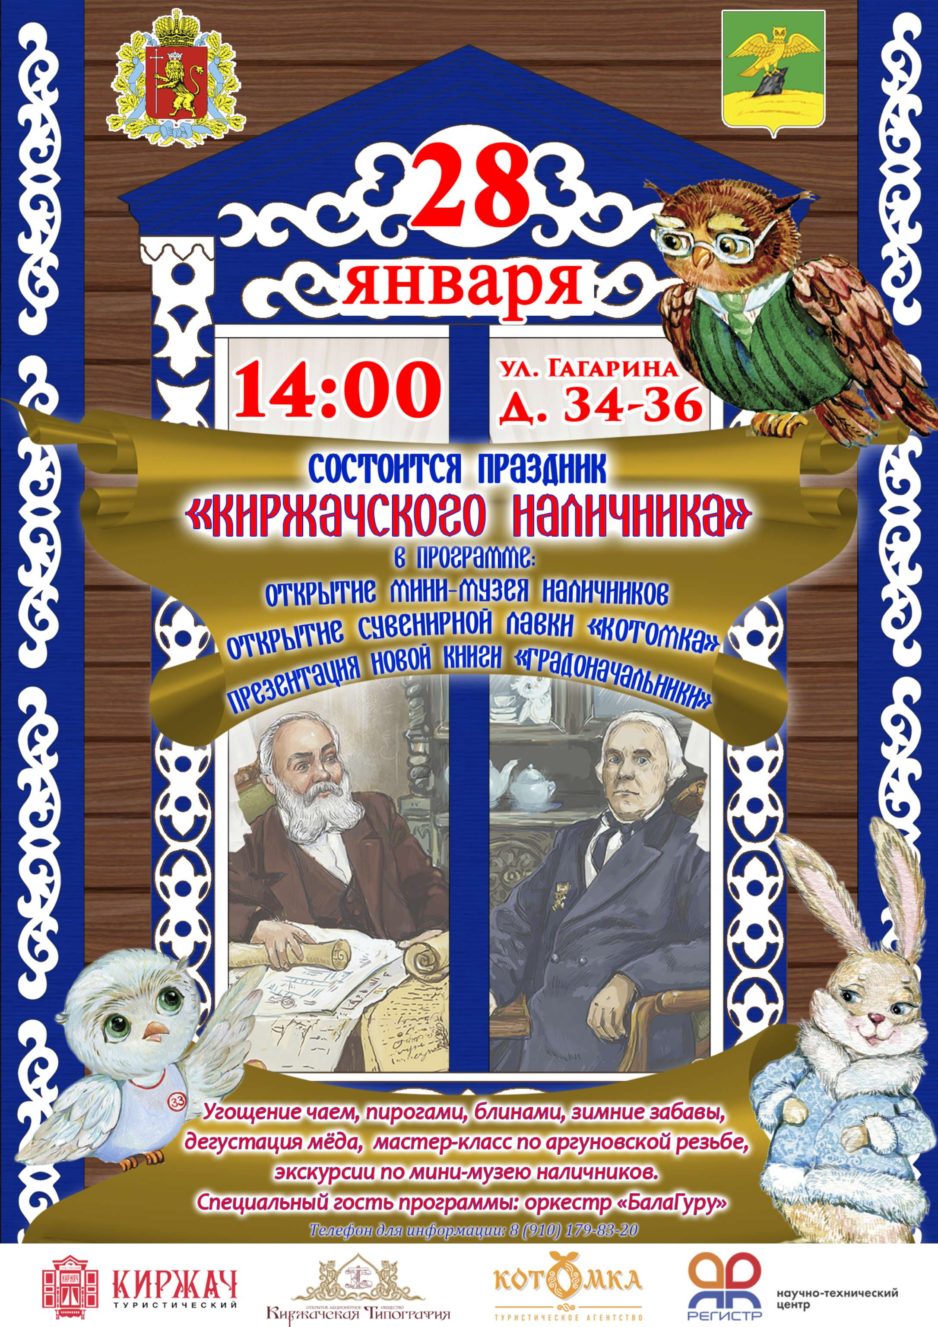 Праздник Киржачского наличника